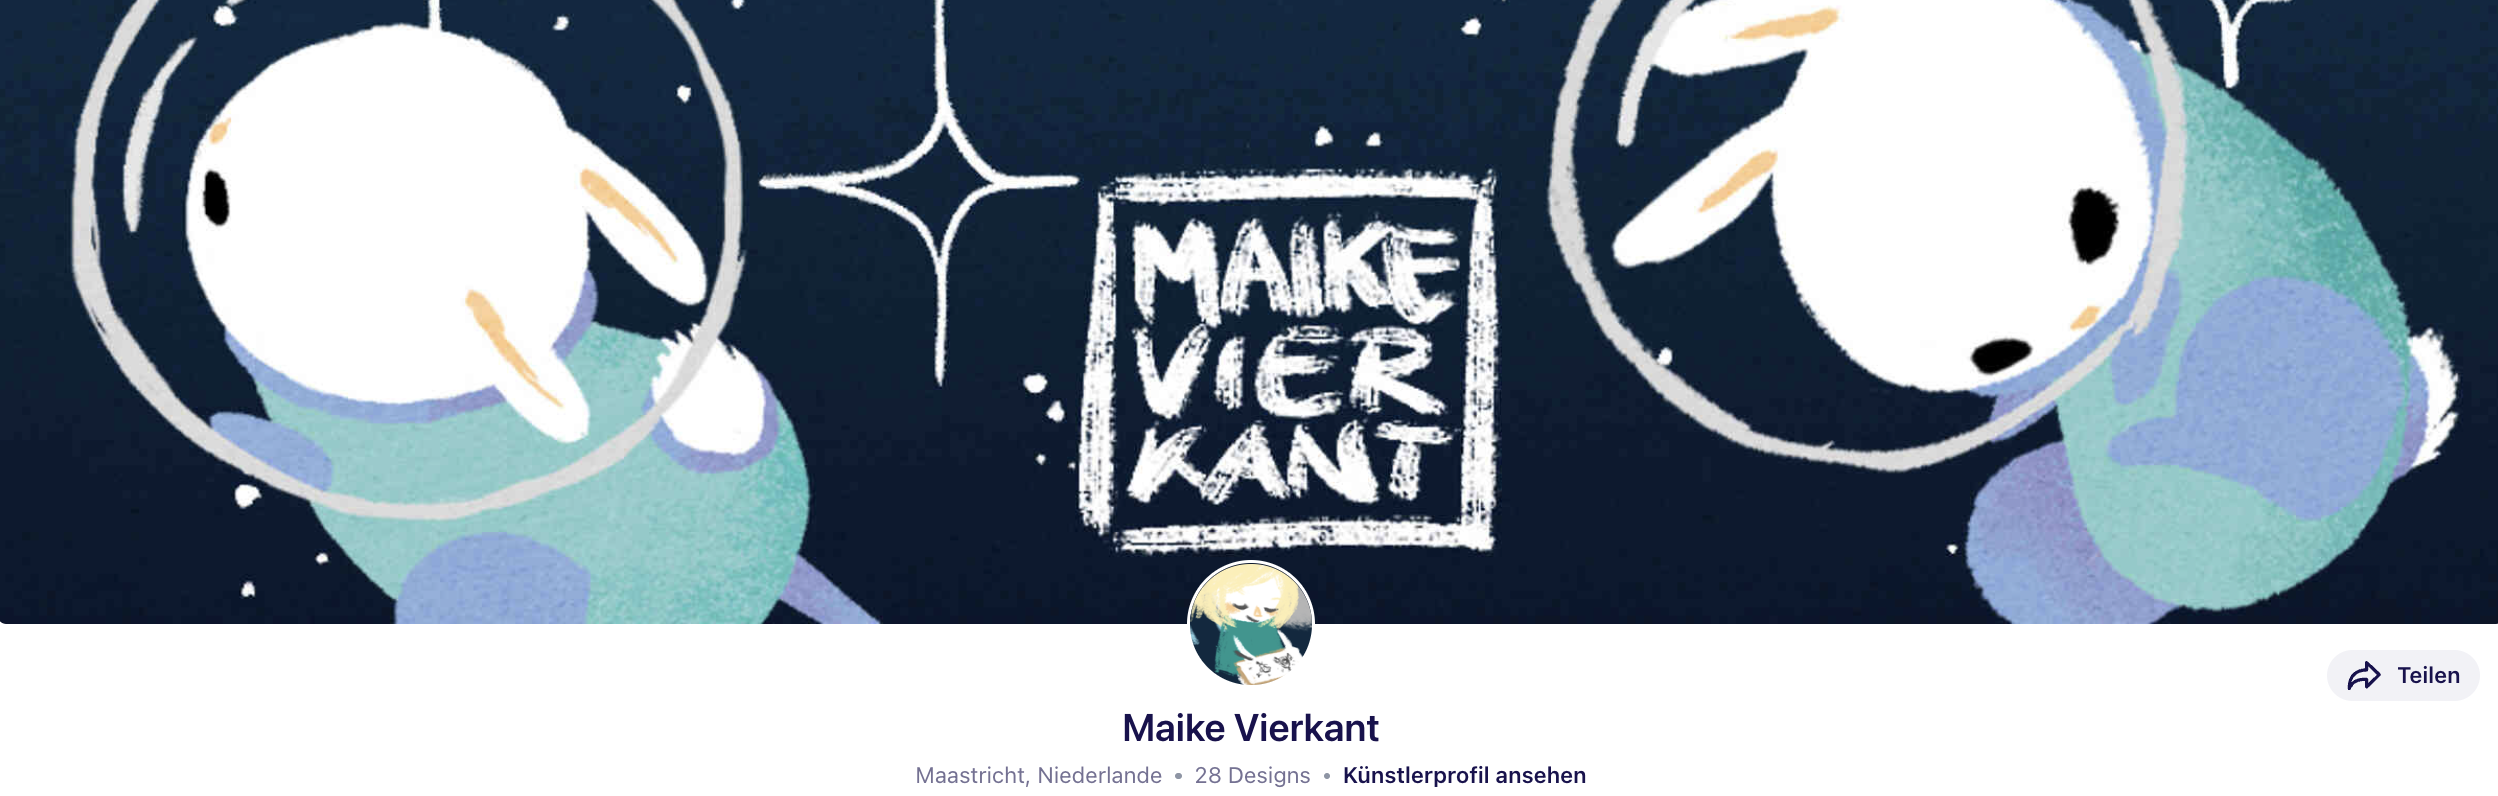 Maike_Vierkant_DE-DE.png